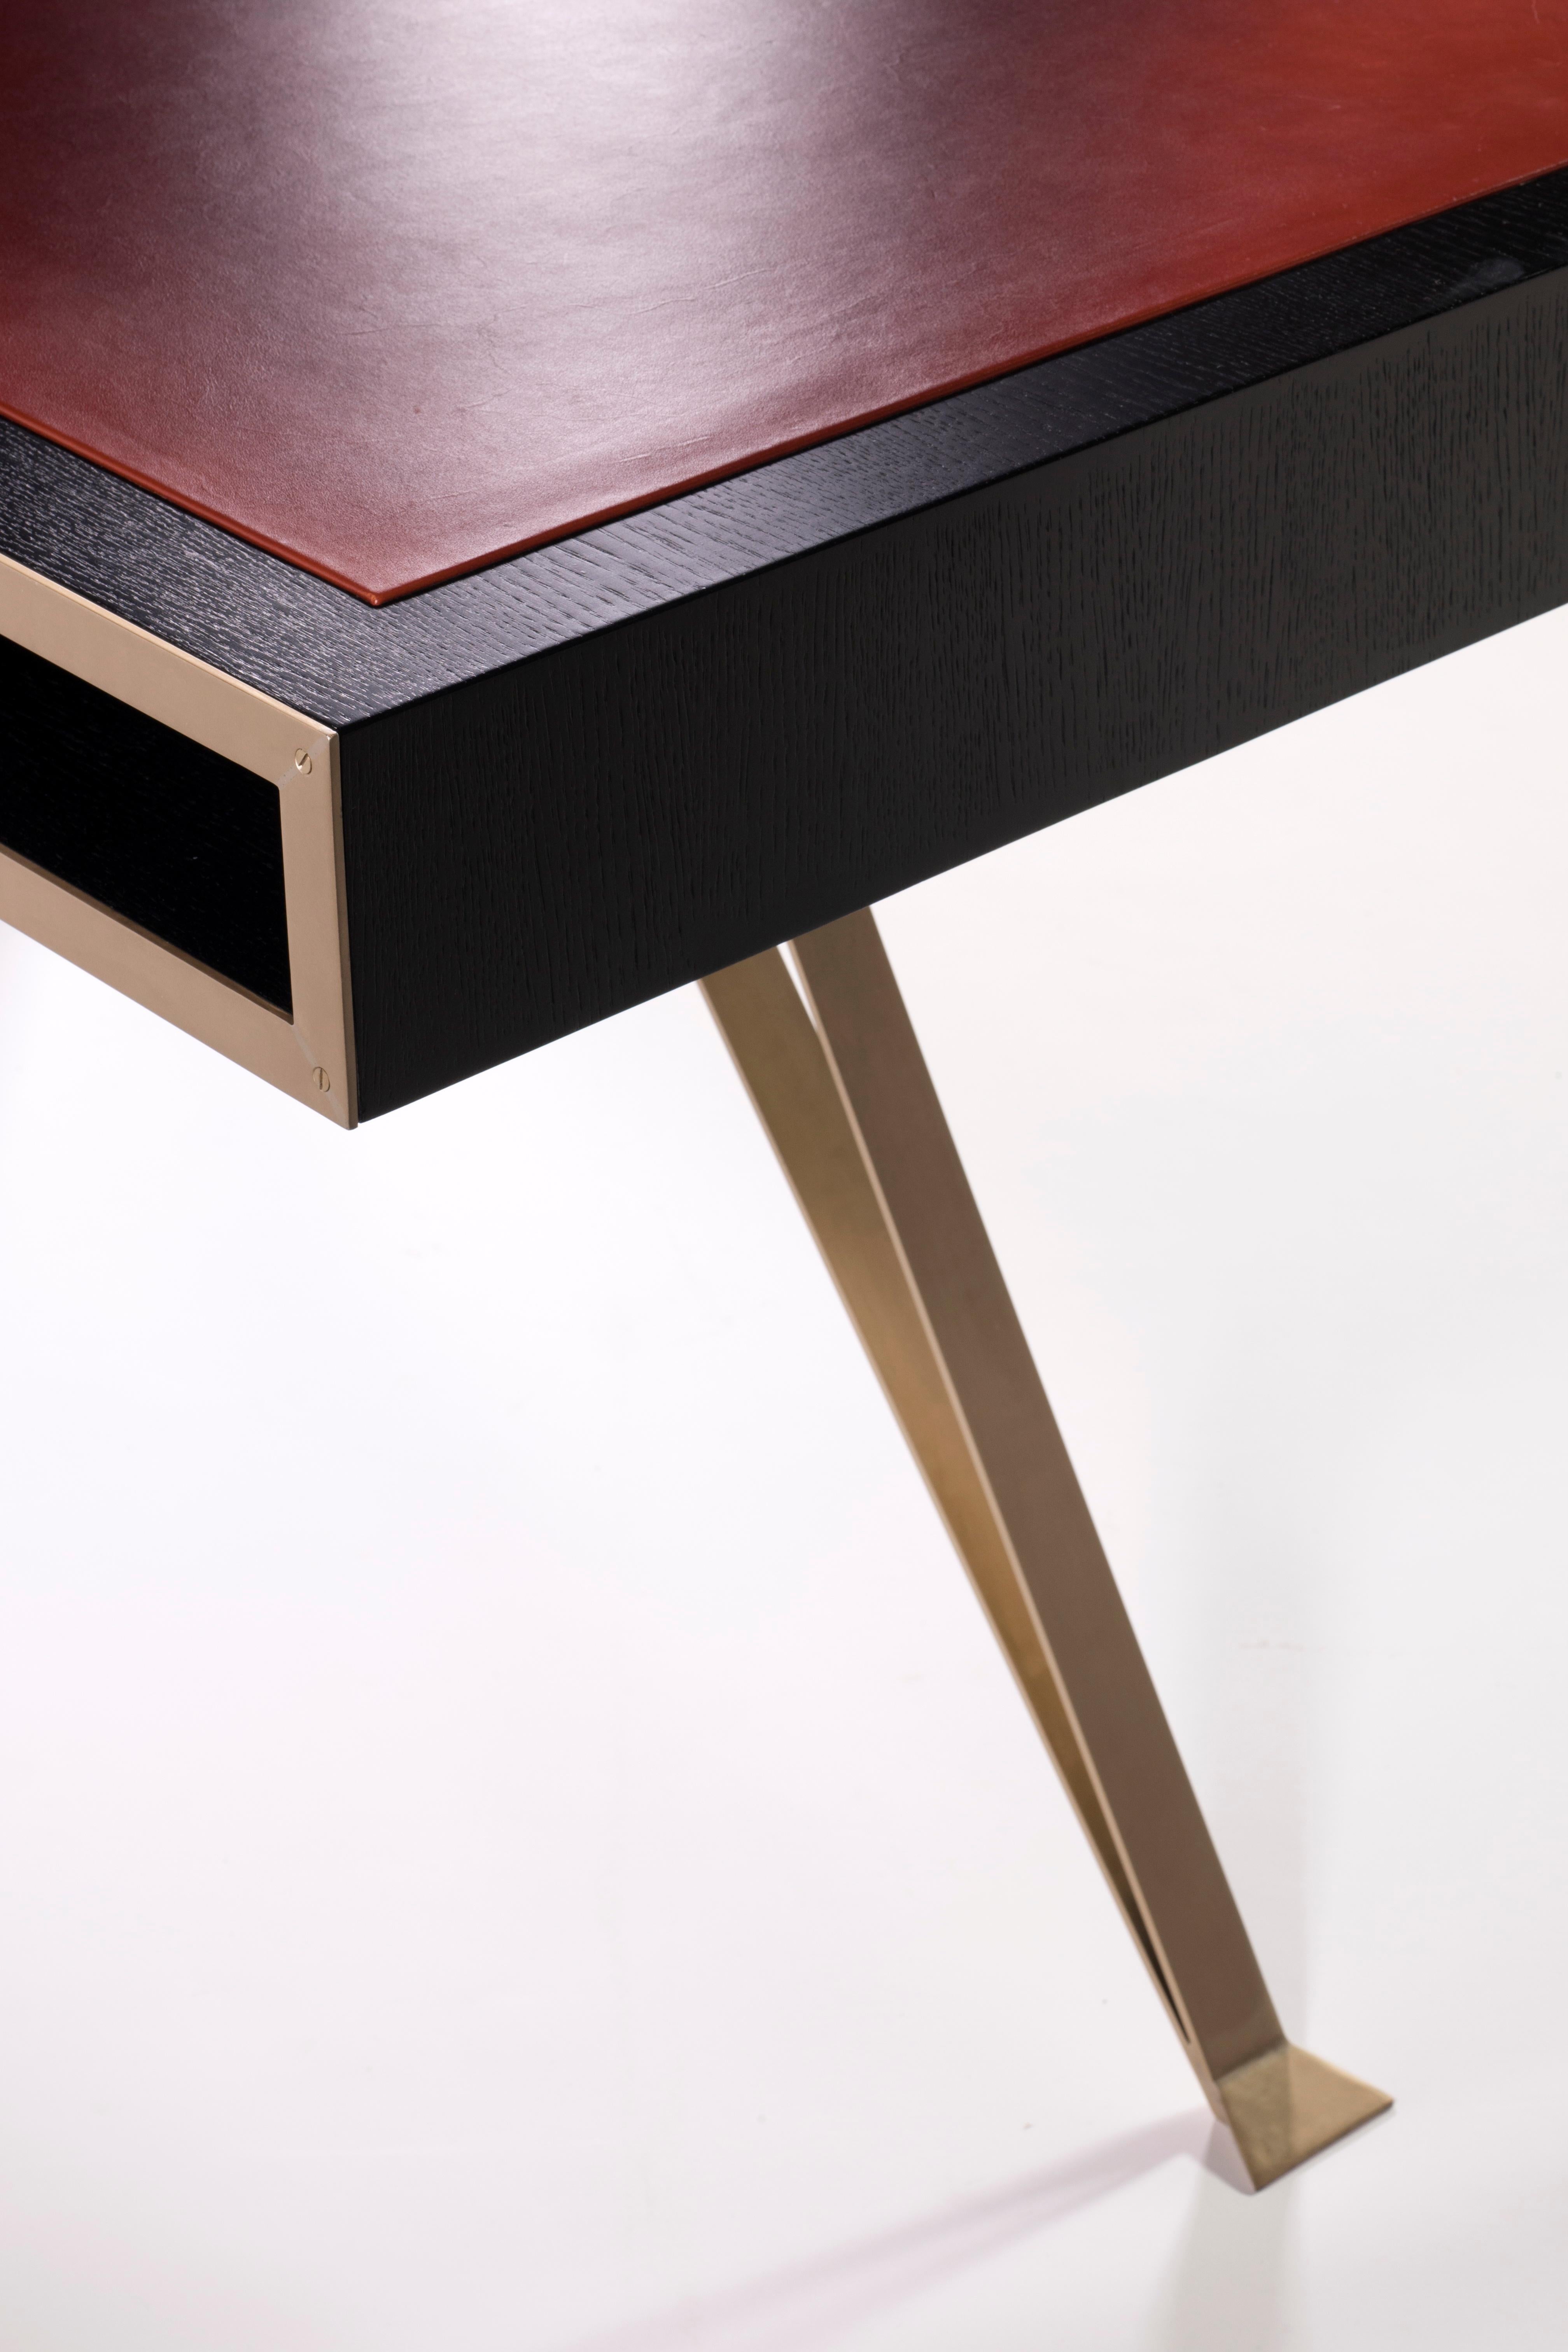 Ein Schreibtisch aus Eiche, Messing und Leder
B.B. - Stark kontrastierende Materialien werden kombiniert - ich liebe es, wie der kastenförmige Tisch und die Schubladen zu schweben scheinen und auf verschiedenen Stativbeinen balancieren. Beachten